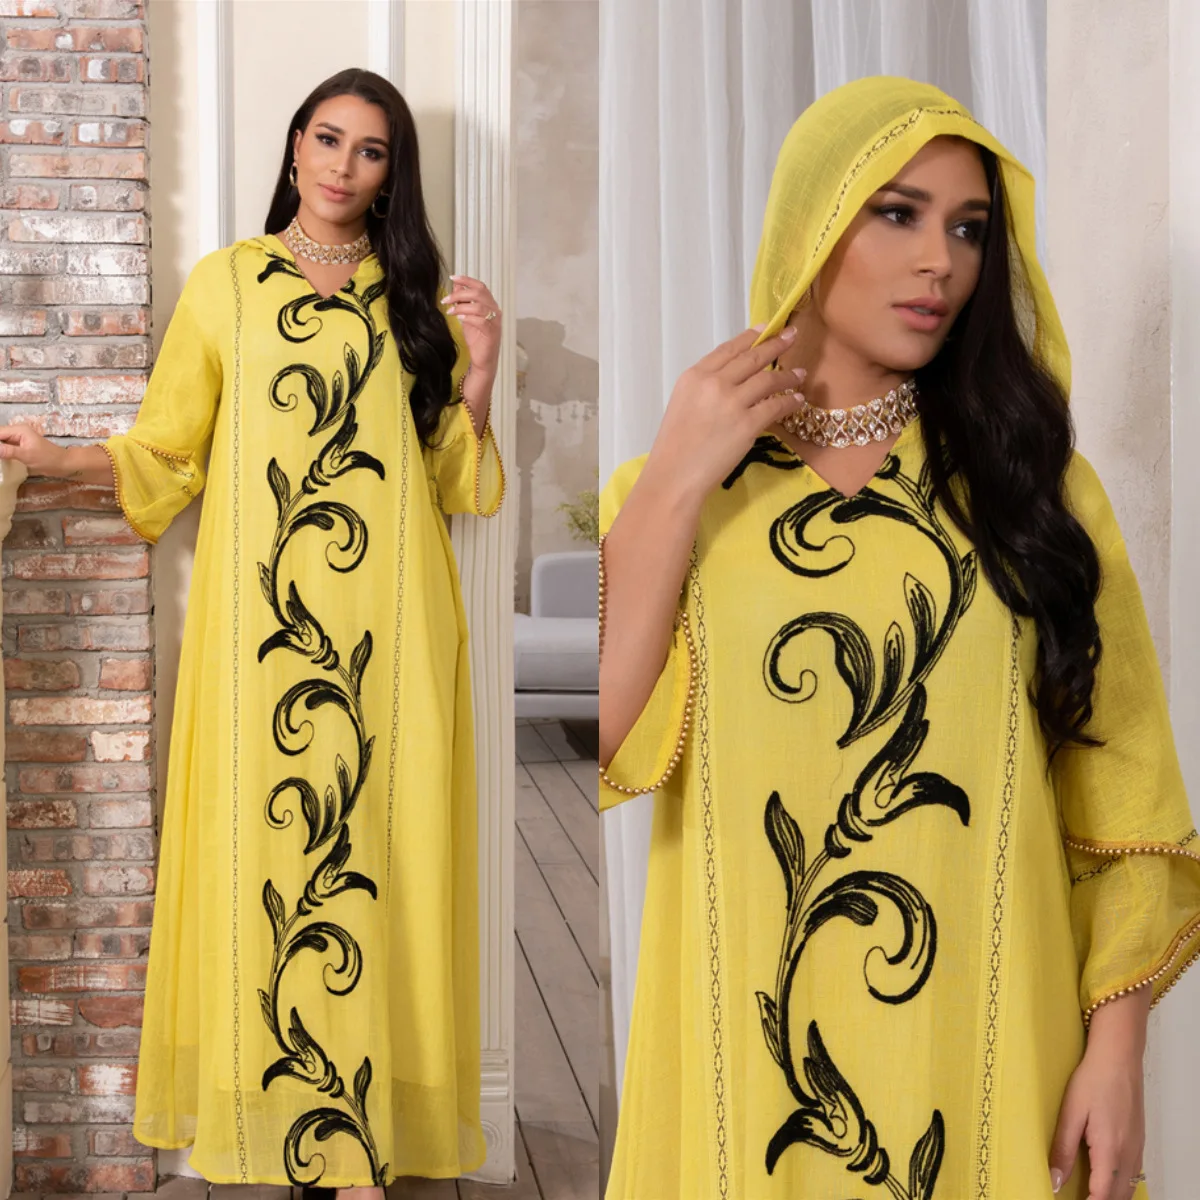 

Dubai Abaya Turkey Hijab Dress Women Autumn Sundress Jilbab Islamic Clothing Caftan Marocain Zanzea Long Sleeve Ruffles Sundress